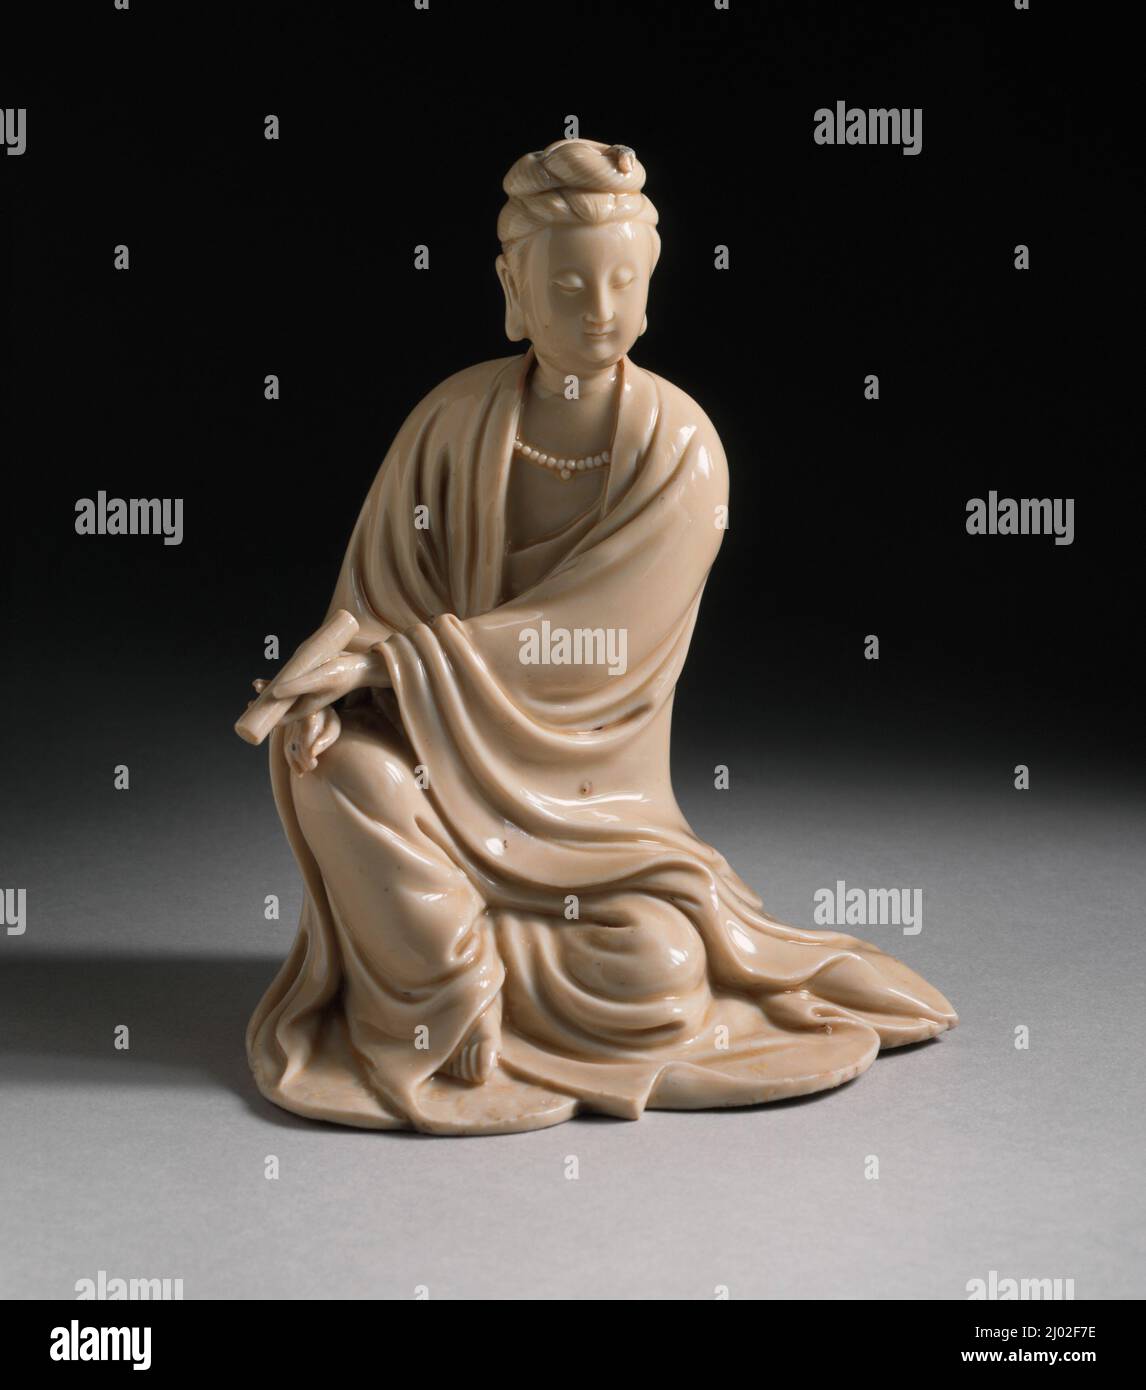 Avalokitésvara (Guanyin), el Bodhisattva de la compasión. China, Provincia de Fujian, Condado de Dehua, Chino, Dinastía Qing temprana, alrededor de 1644-1700. Escultura. Dehua, porcelana moldeada y modelada con decoración incisa y esmalte crema Foto de stock